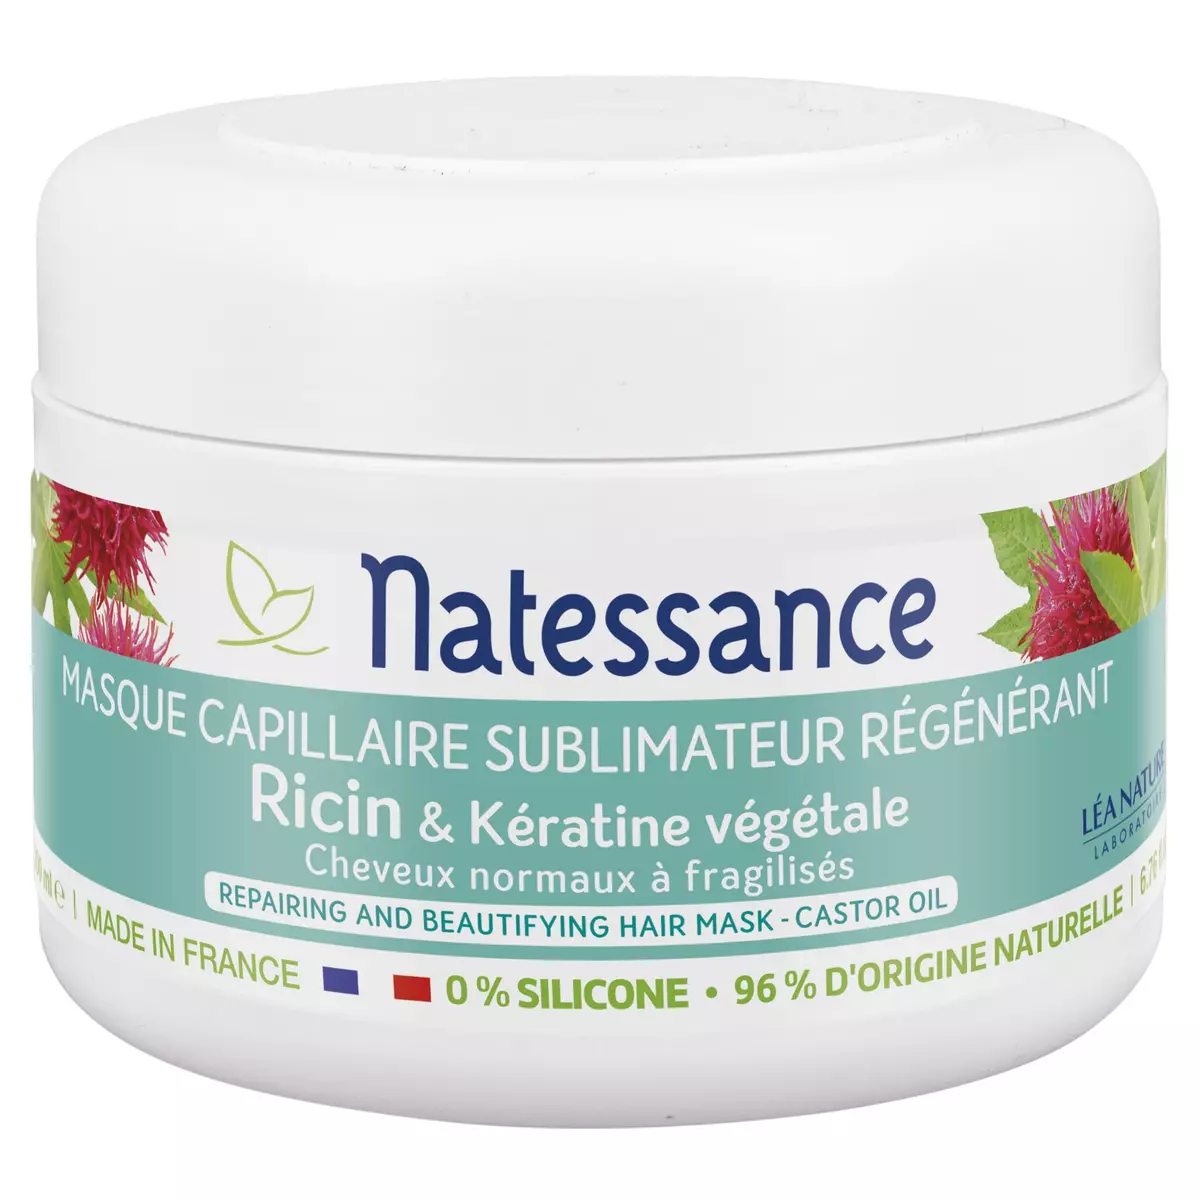 NATESSANCE Masque capillaire sublimateur régénérant ricin & kératine végétale 200ml